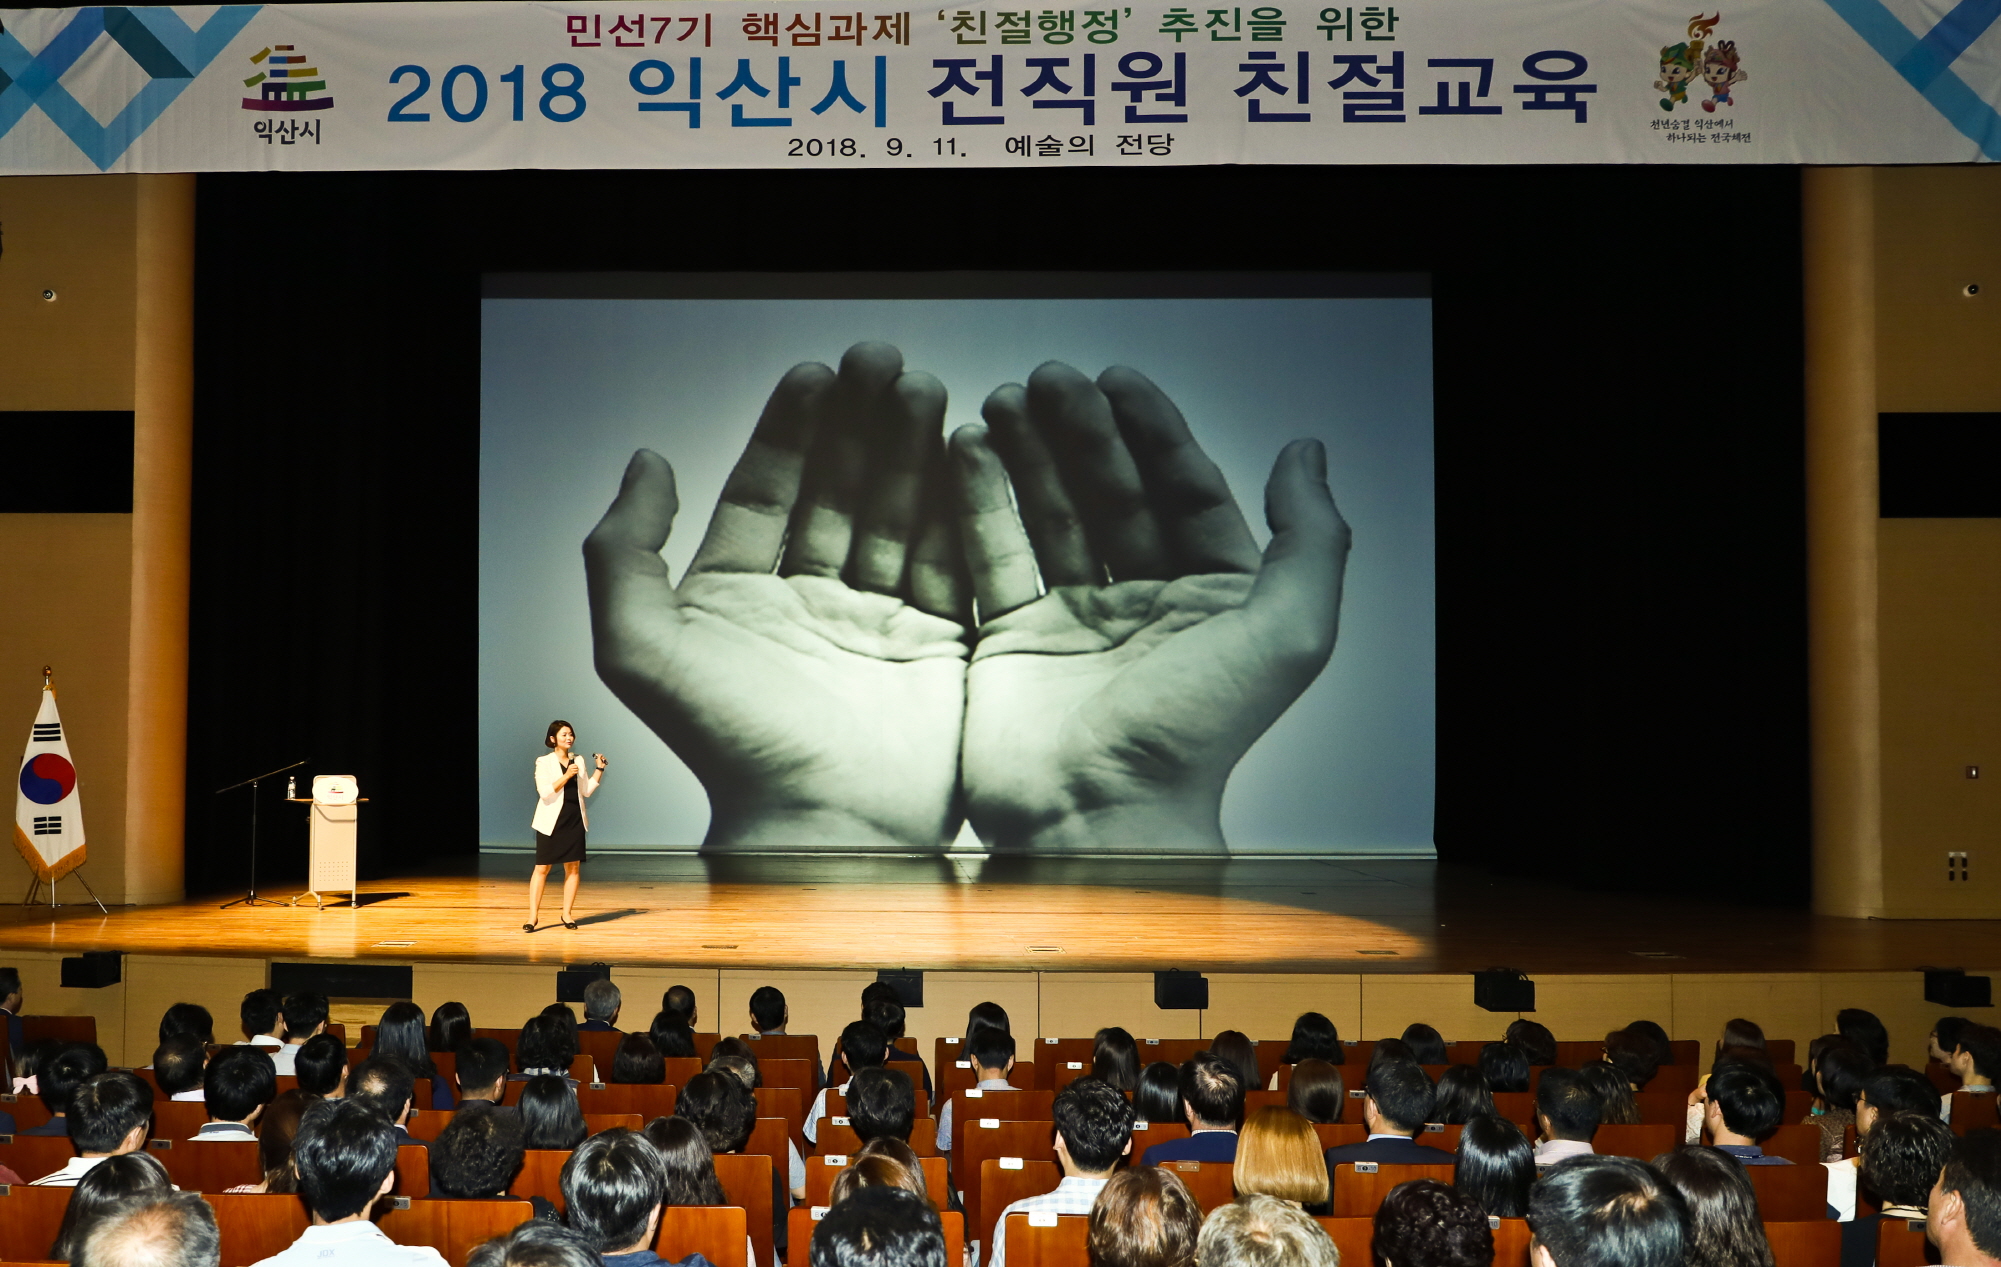 9월11일  민선7기 핵심과제 '친절행정' 추진을 위한 2018년 전직원 친절교육2